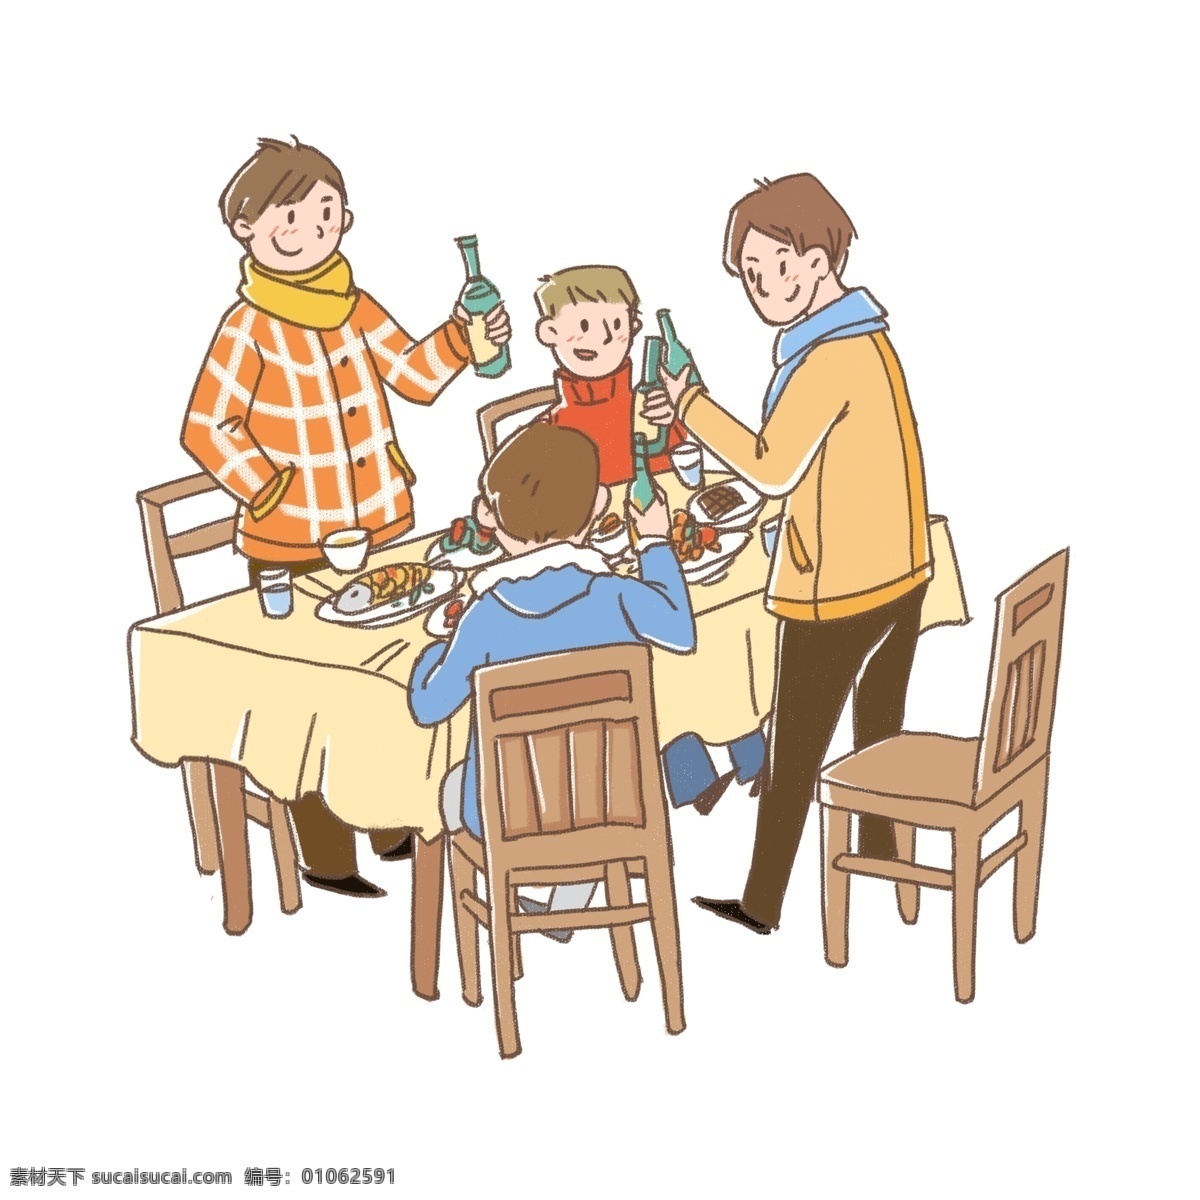 过节 兄弟 一起 聚餐 喝酒 兄弟们 桌子 凳子 举杯庆祝 新年快乐 丰盛的菜肴 蓝色 橘色 黄色 米饭碗儿 节日